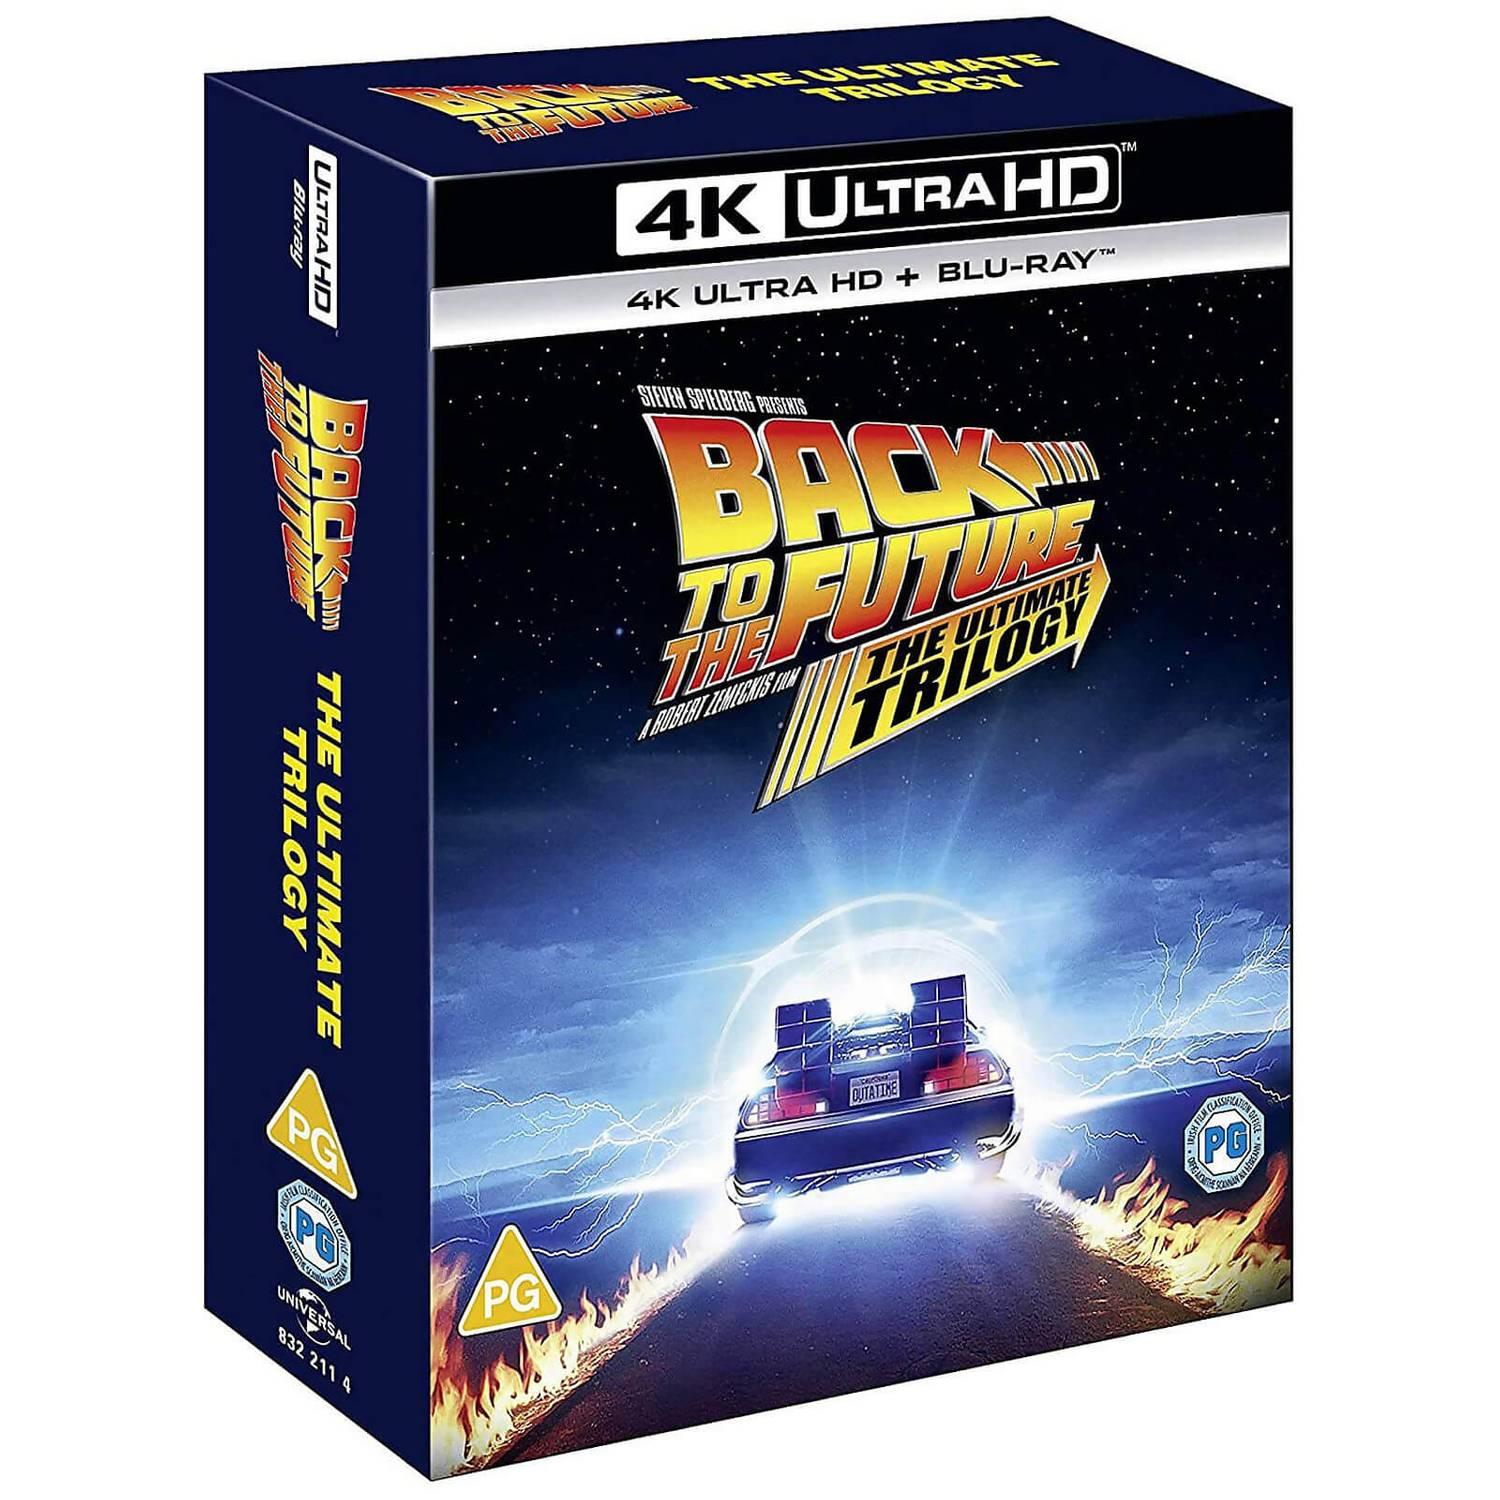 Назад в будущее: Трилогия (4K UHD + Blu-ray + Бонусный диск)